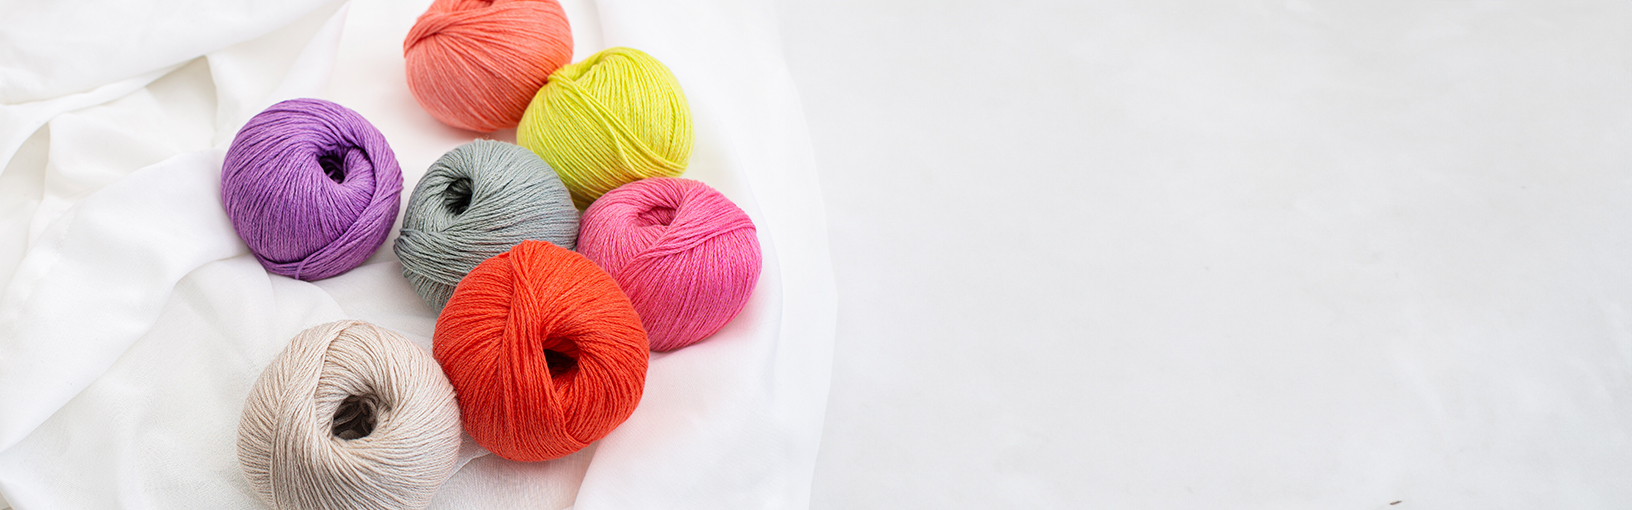 High quality yarns for knitting, crocheting & felting Lana Grossa Yarns | Big & Easy